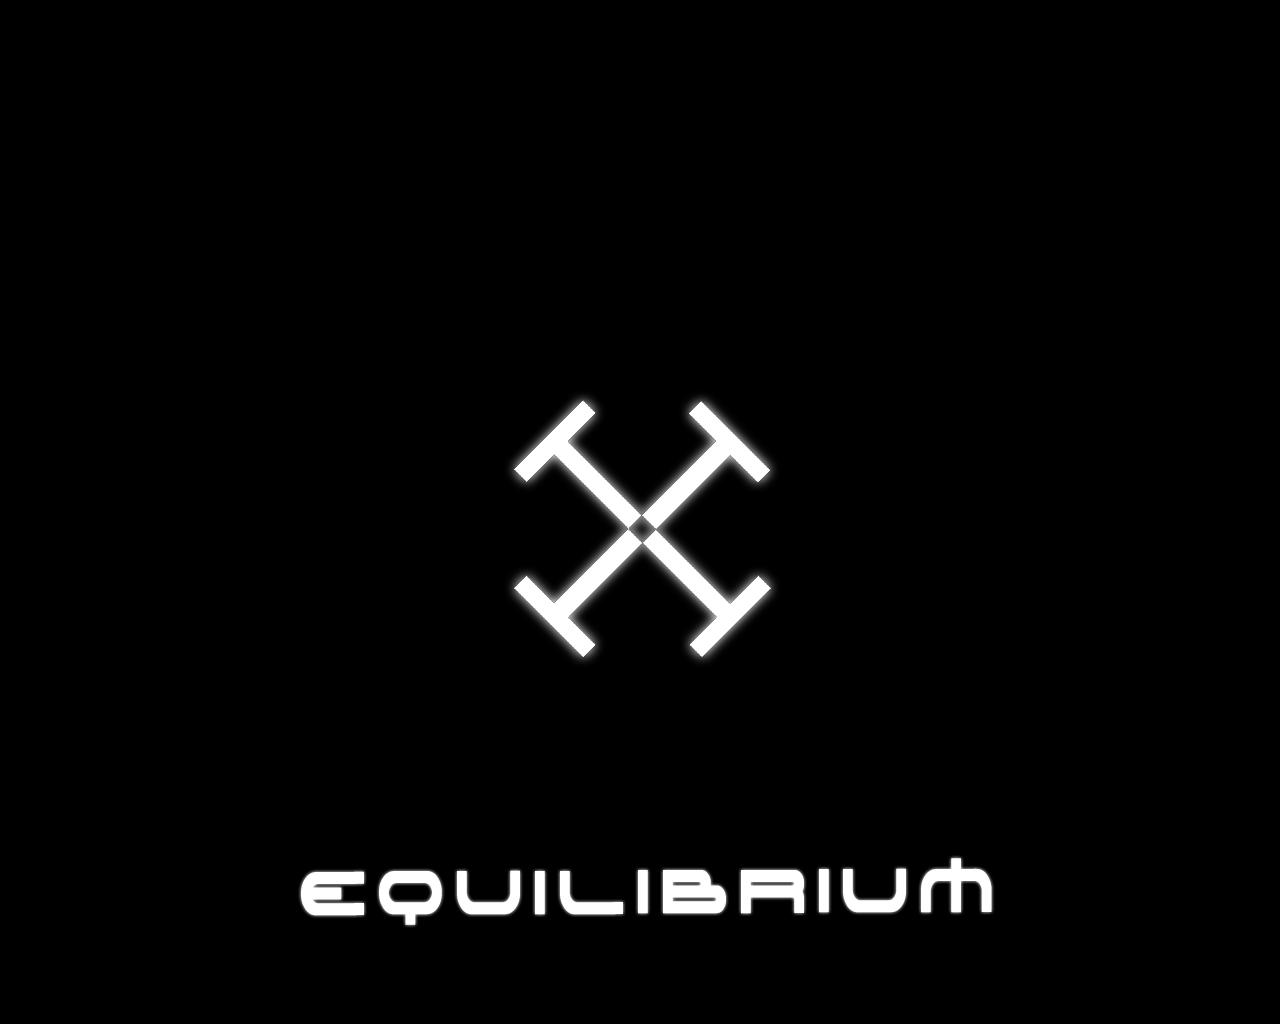 Equilibrium Wallpaper. Equilibrium